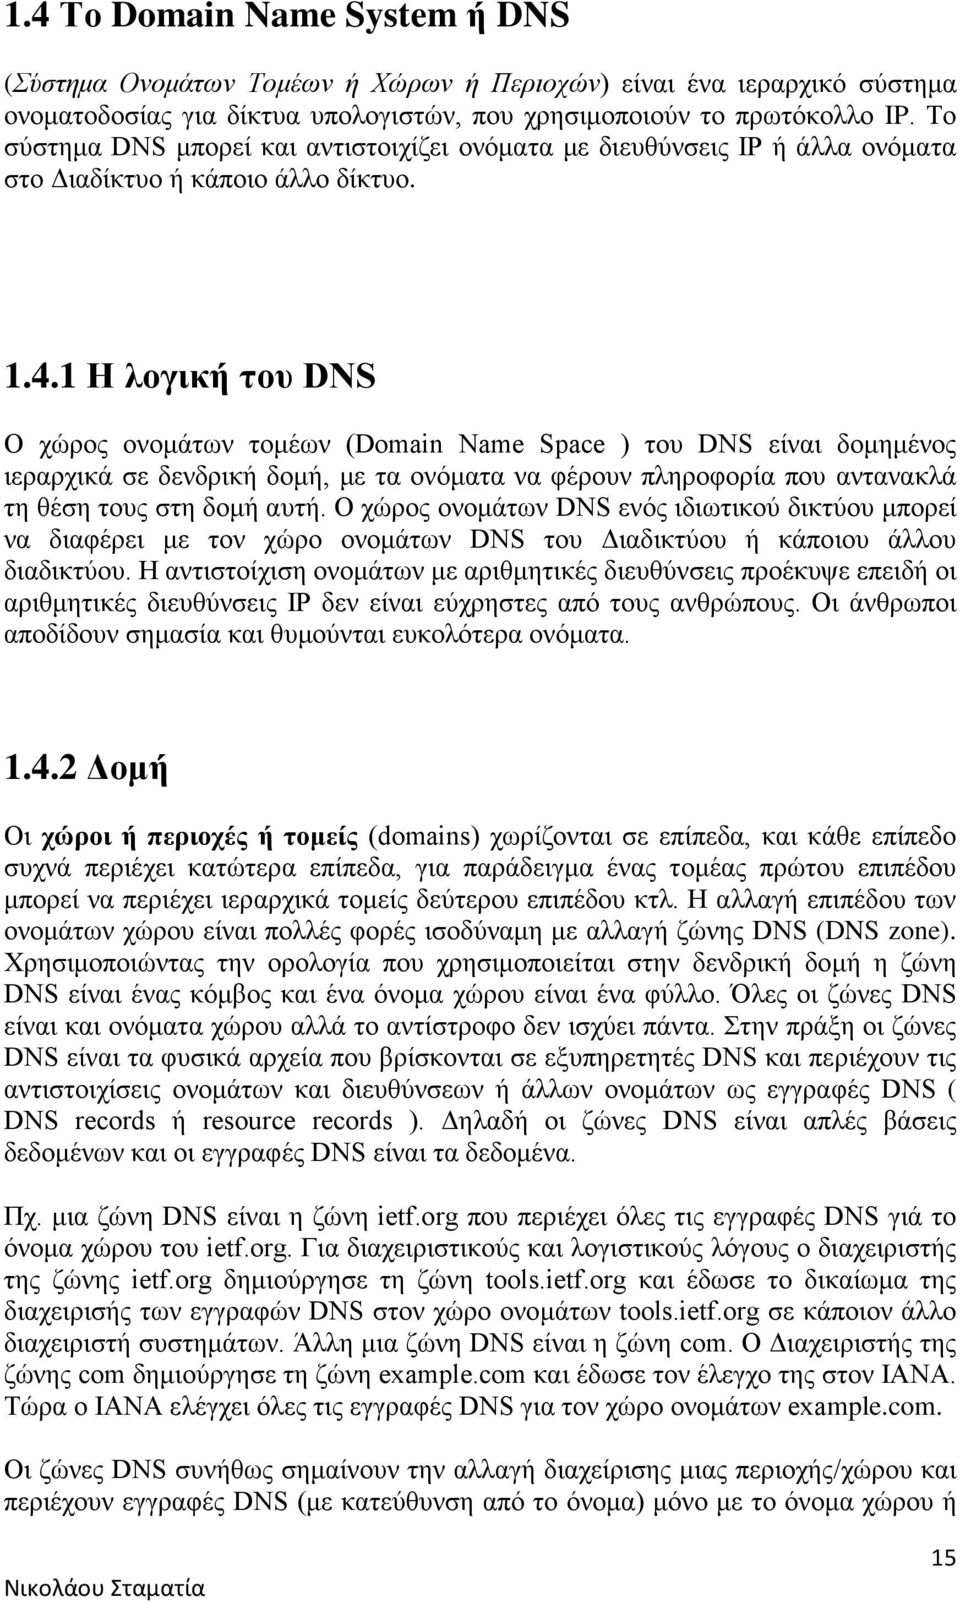 1 Η λογική του DNS Ο χώρος ονομάτων τομέων (Domain Name Space ) του DNS είναι δομημένος ιεραρχικά σε δενδρική δομή, με τα ονόματα να φέρουν πληροφορία που αντανακλά τη θέση τους στη δομή αυτή.